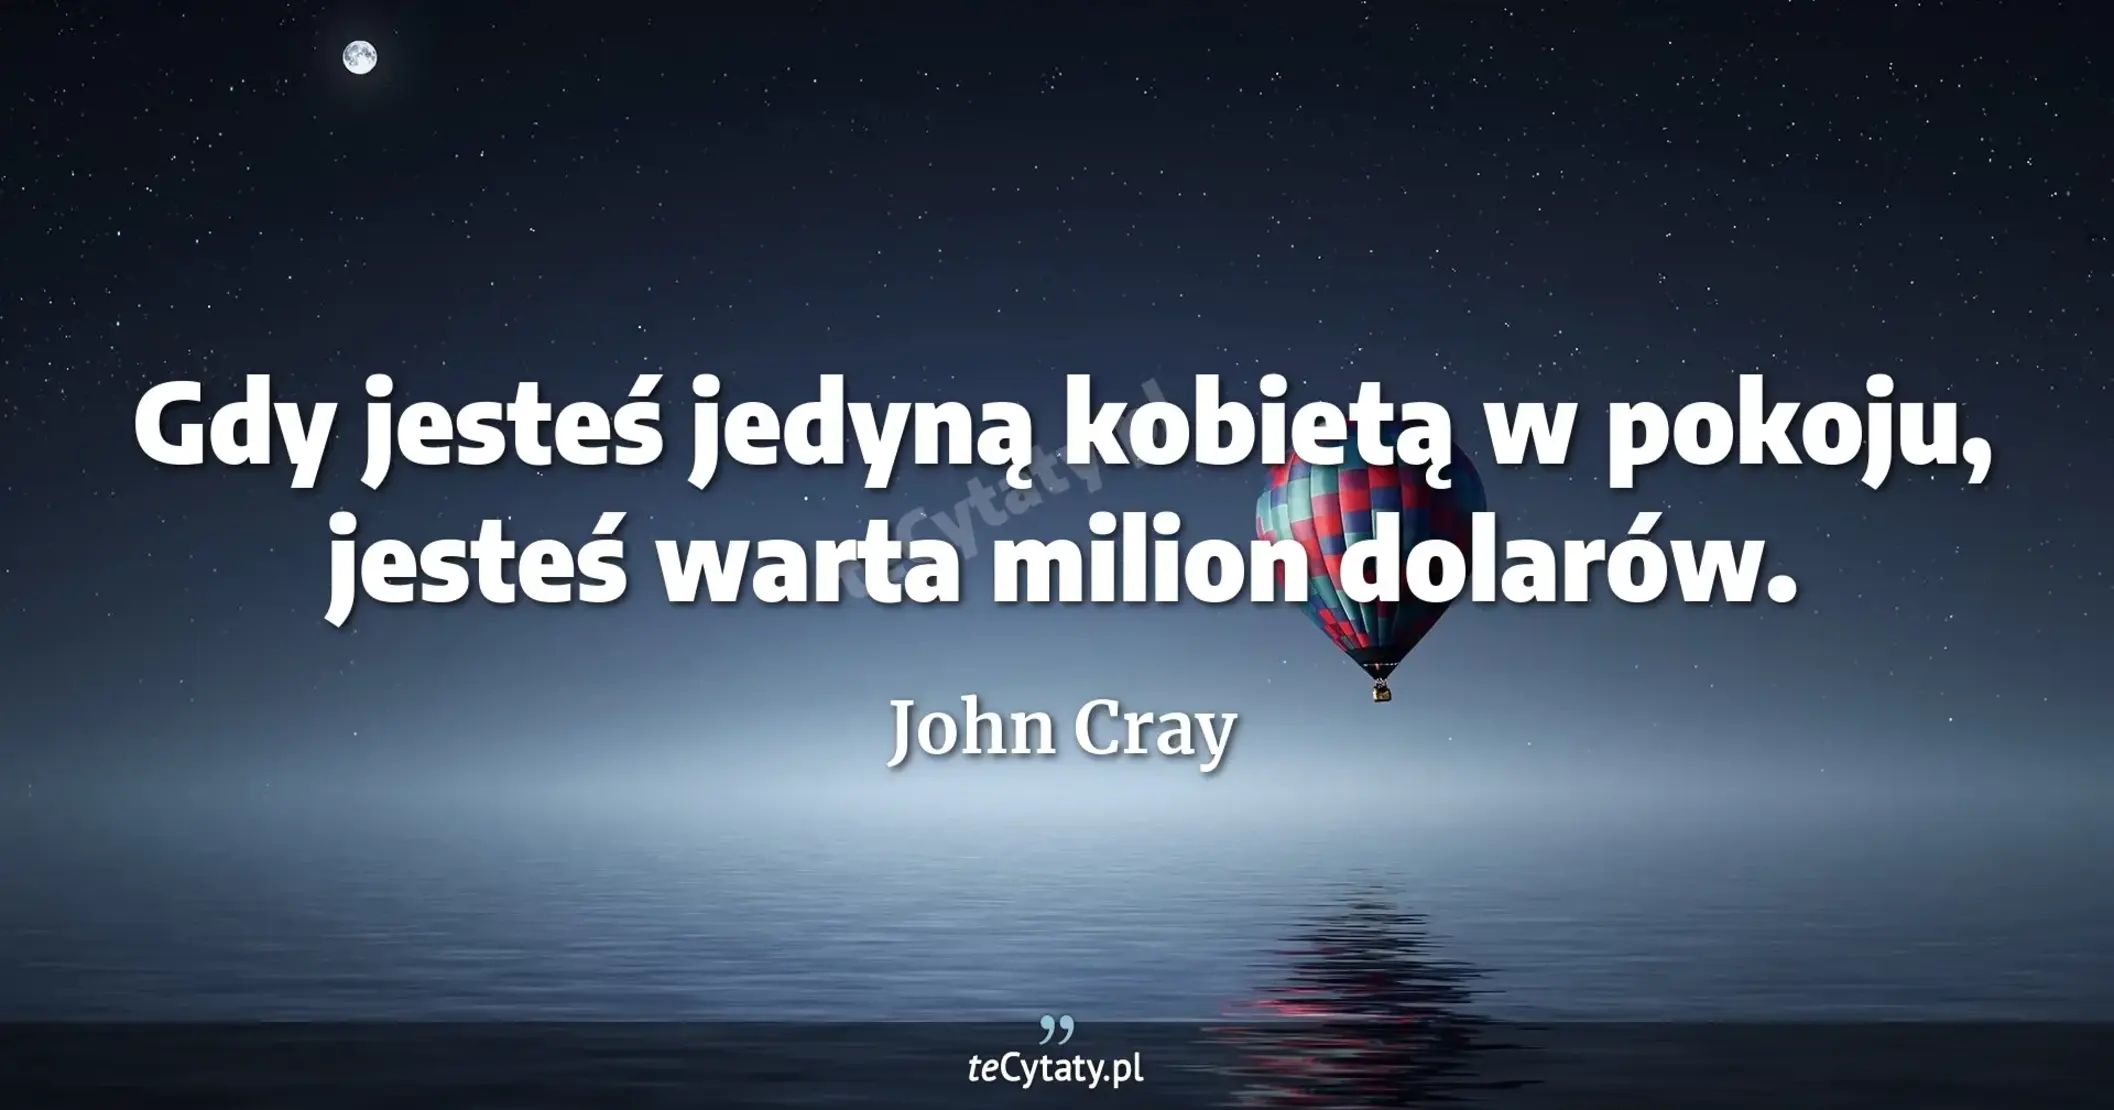 Gdy jesteś jedyną kobietą w pokoju, jesteś warta milion dolarów. - John Cray